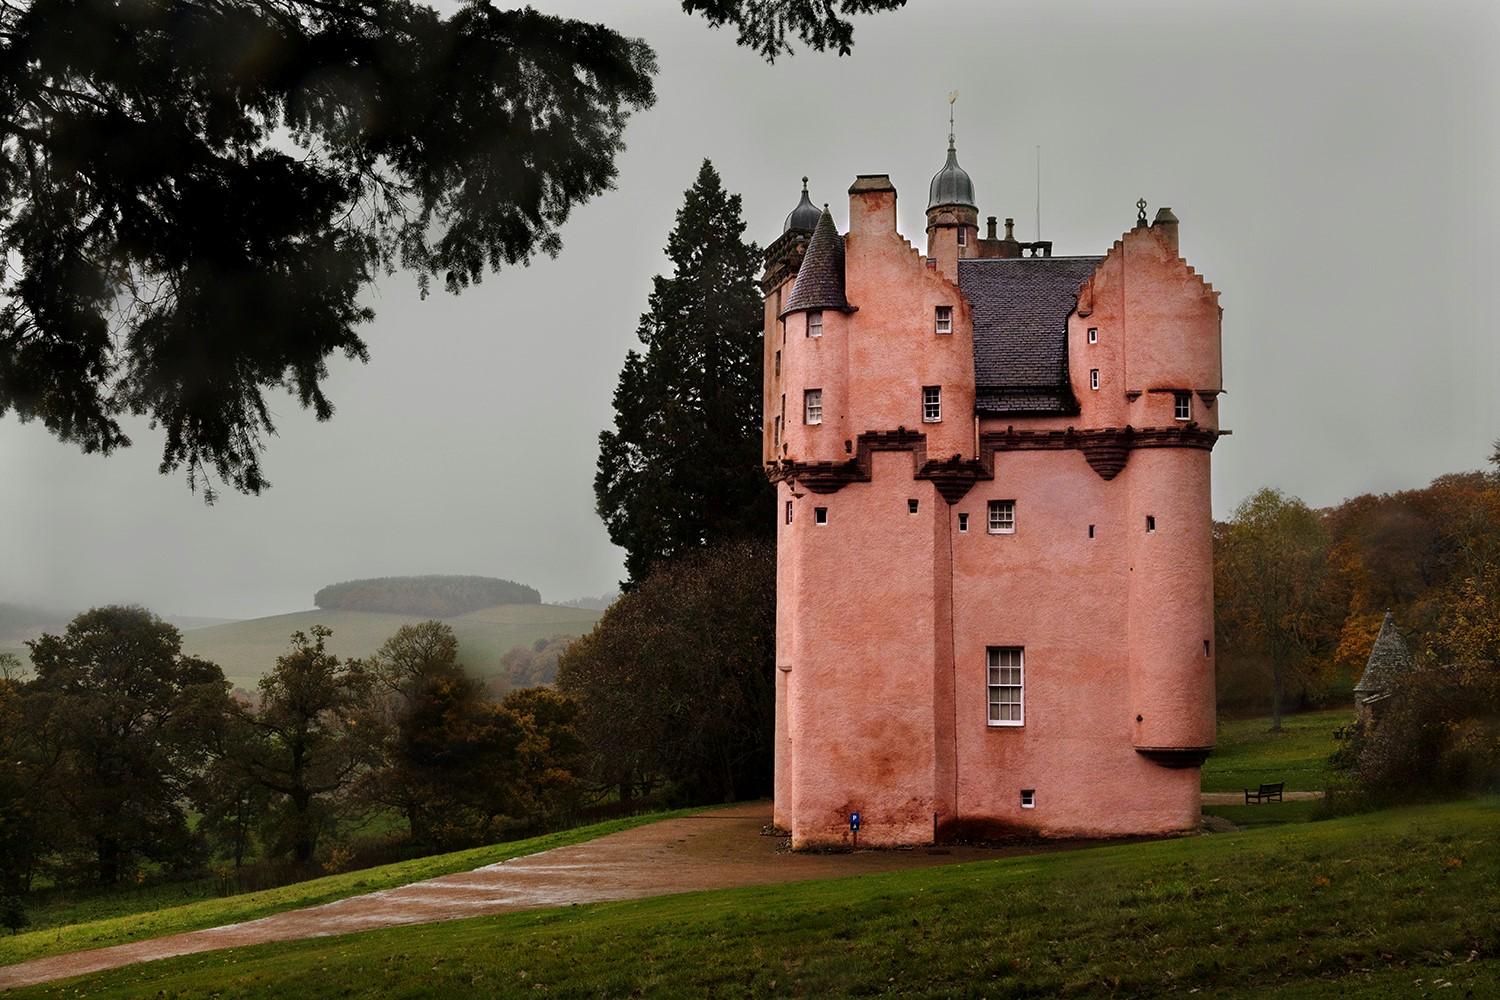 Pink Castle (Wet Scotland) by Christophe Jacrot - landscape photography